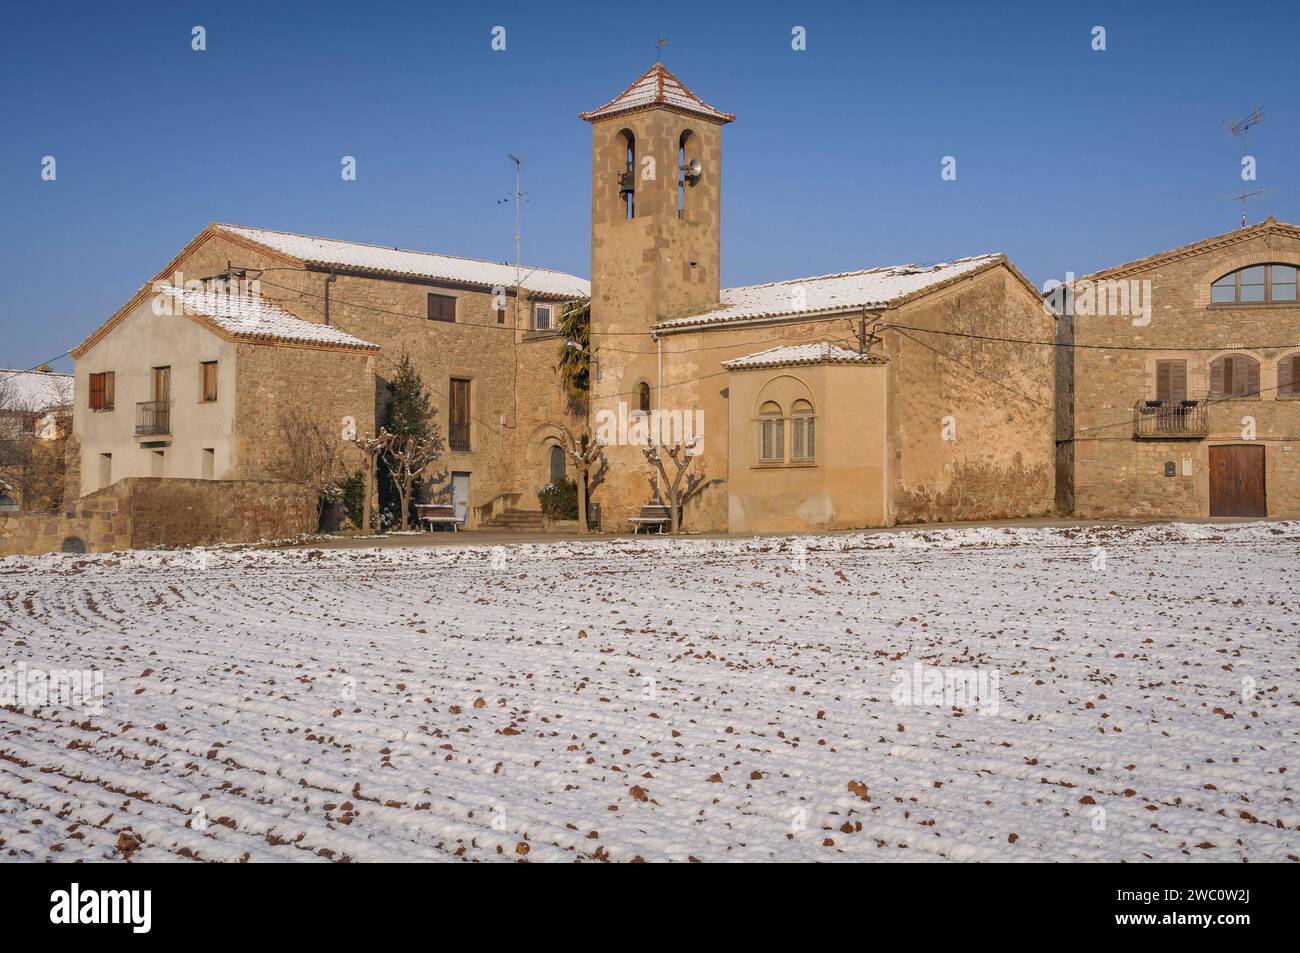 Village of El Mujal, after a winter snowfall (Navàs, Barcelona, Catalonia, Spain) ESP: Aldea de El Mujal, tras una nevada de invierno (Navàs, BCN) Stock Photo